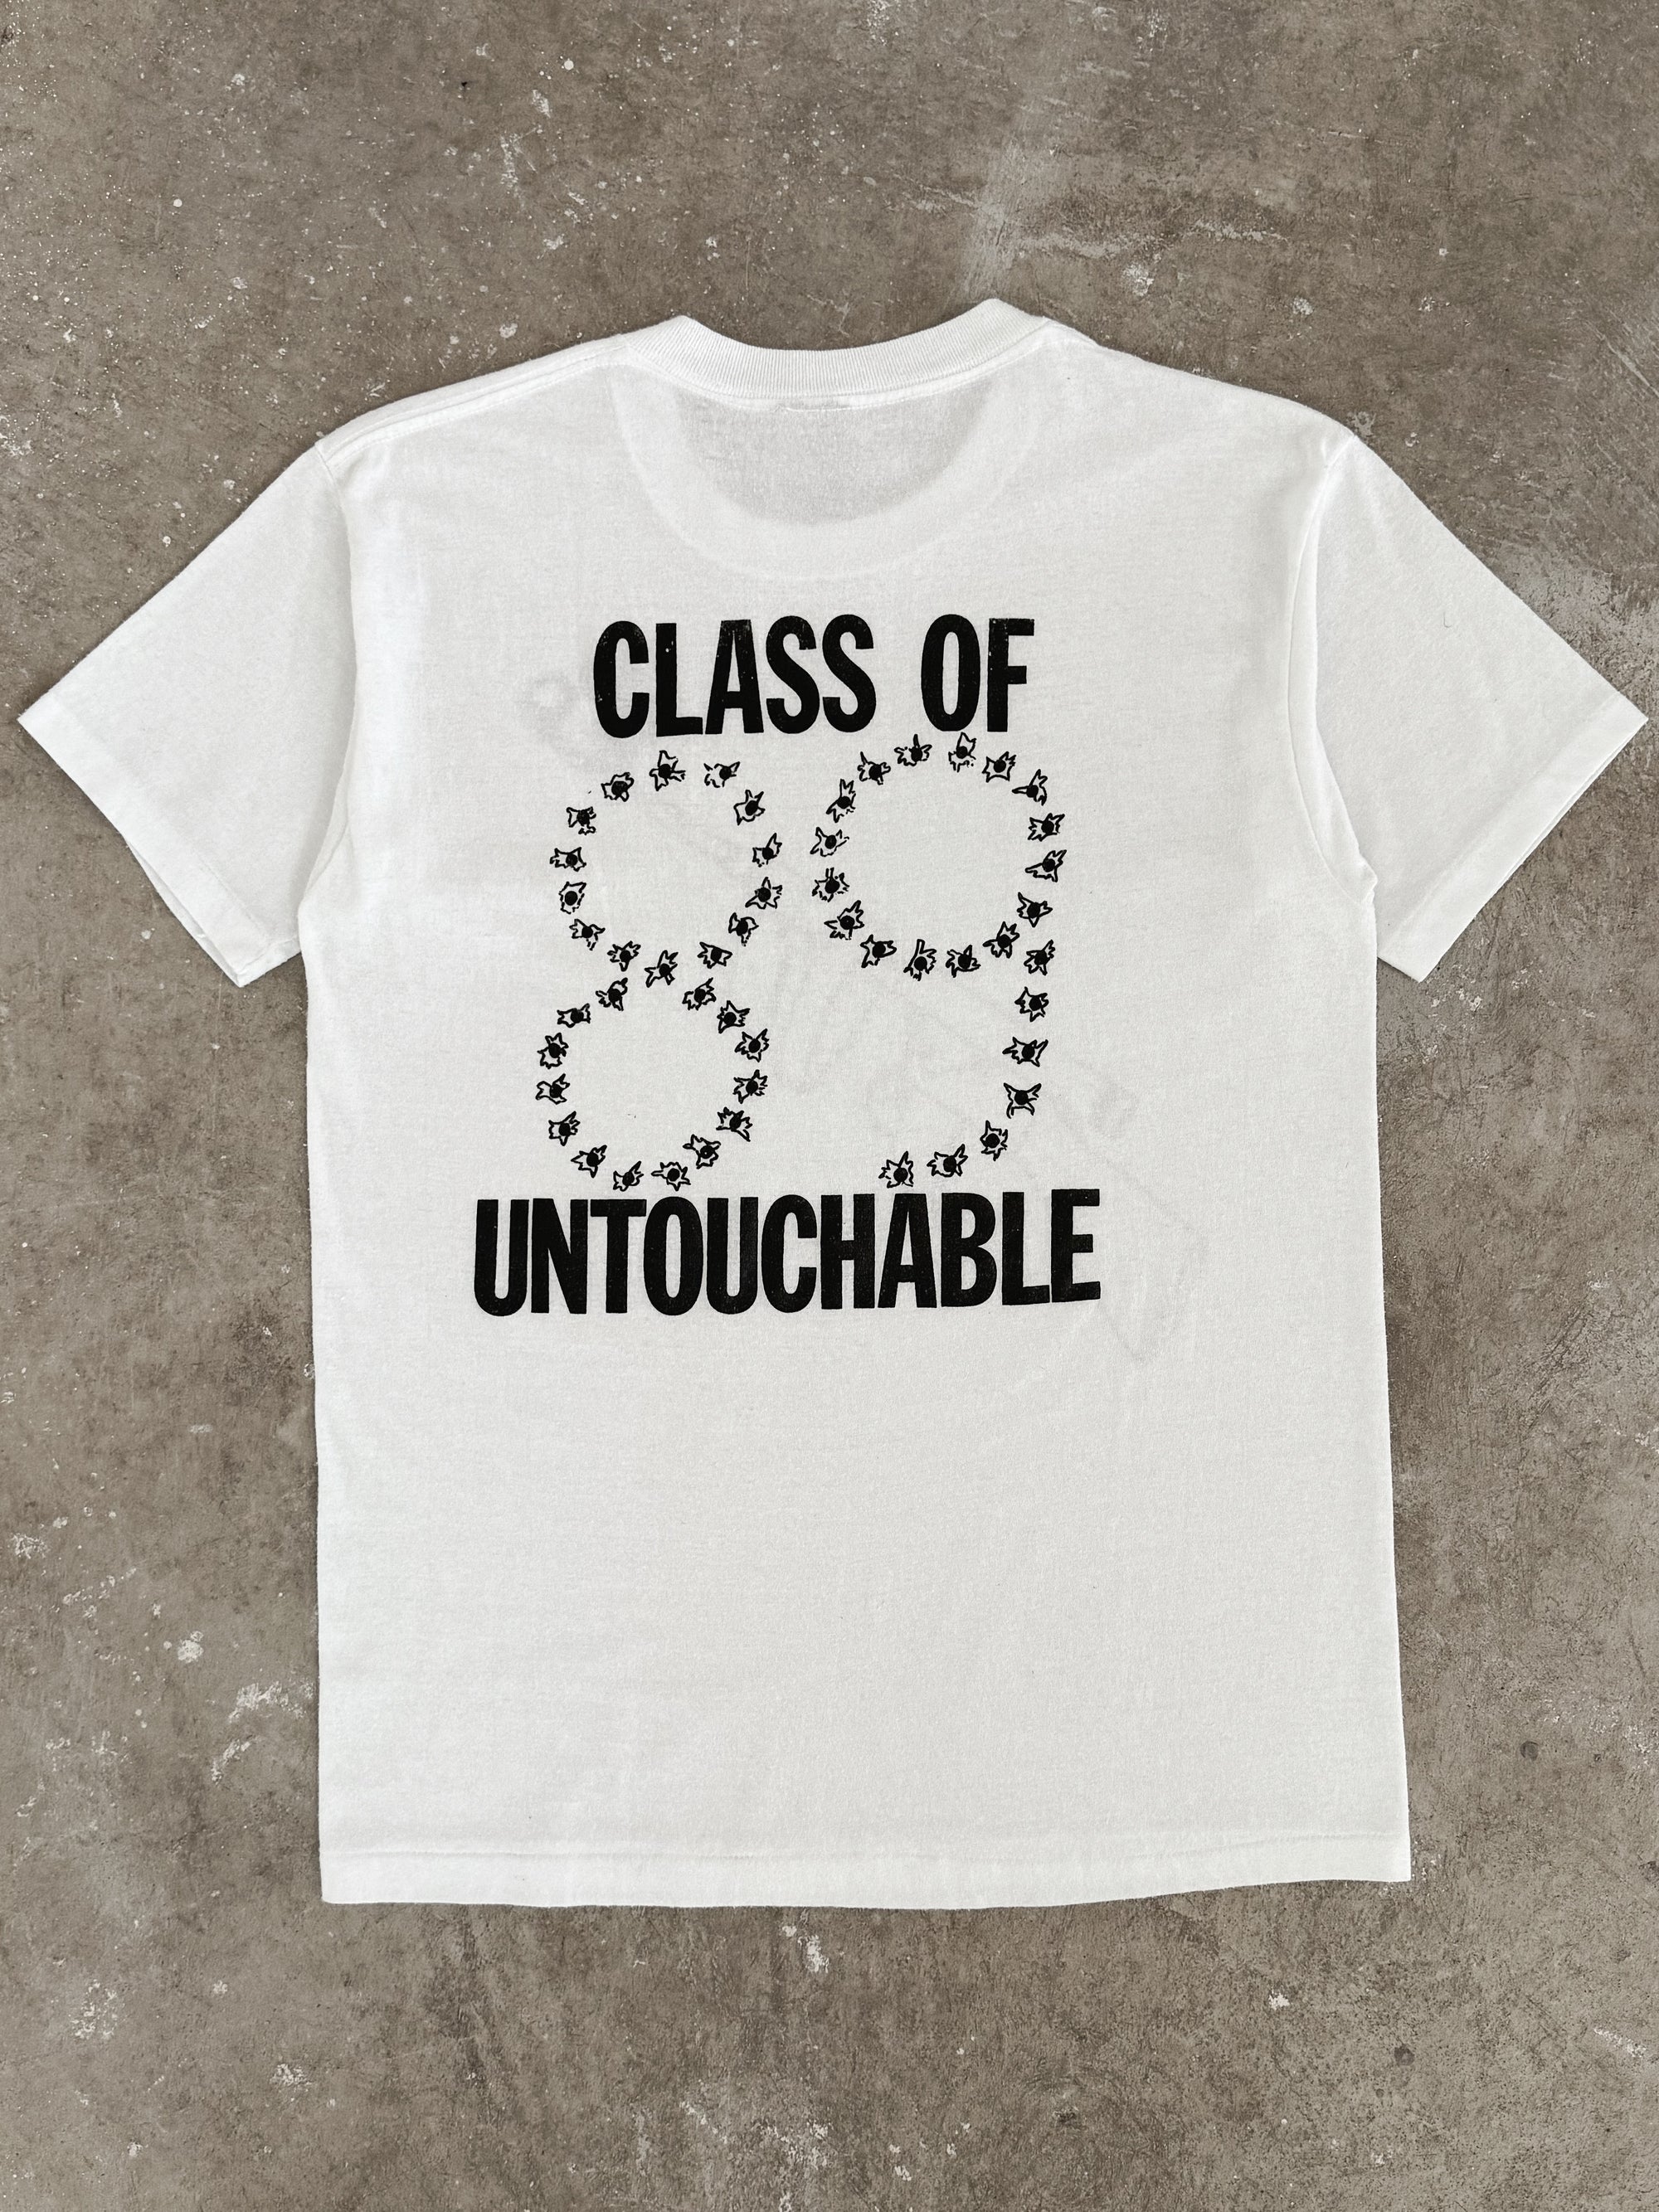 1980s "Untouchable" Tee (S)